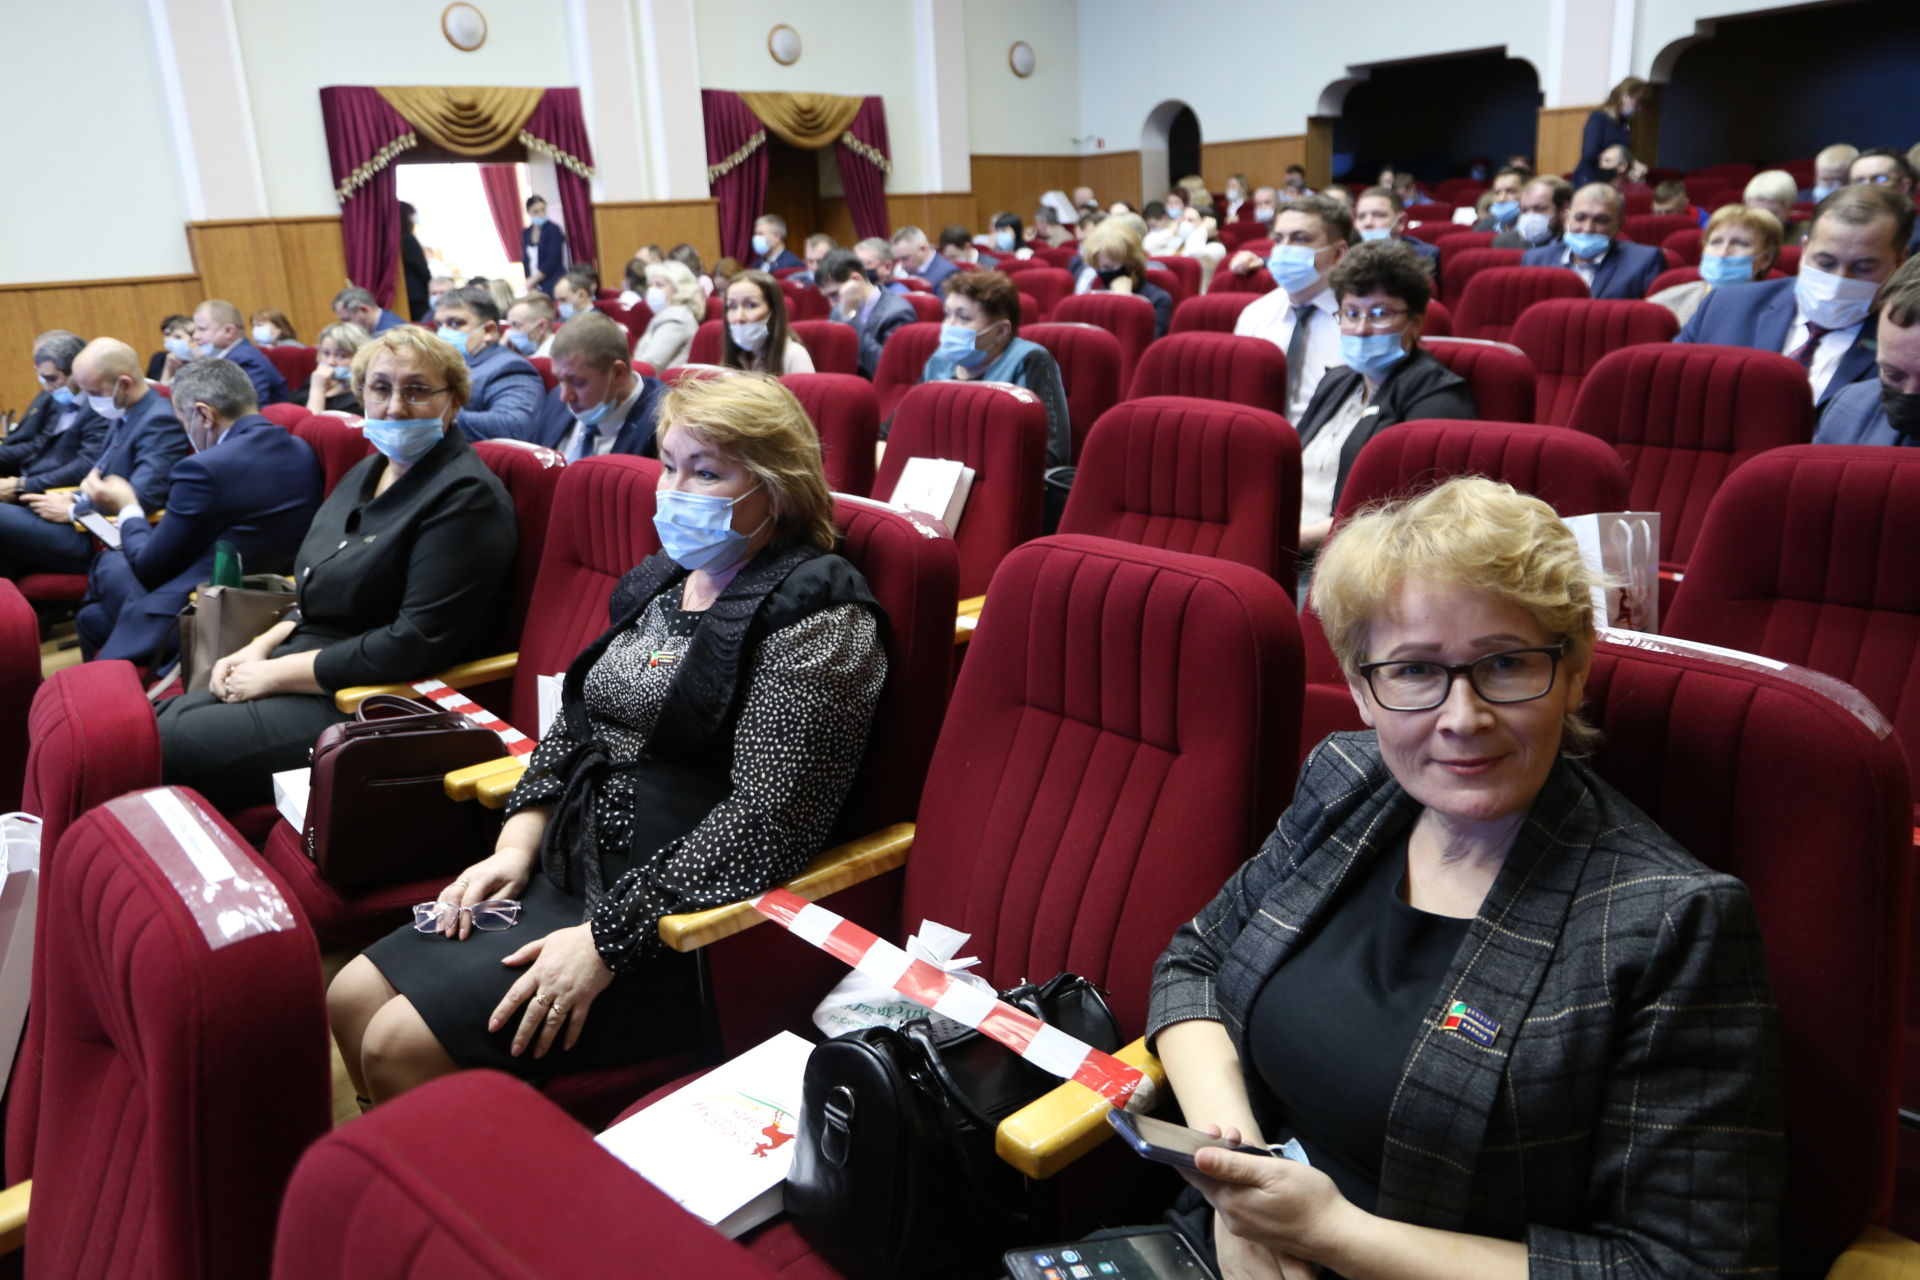 Фоторепортаж: выставка товаропроизводителей и почетные награды жителей Алексеевского района